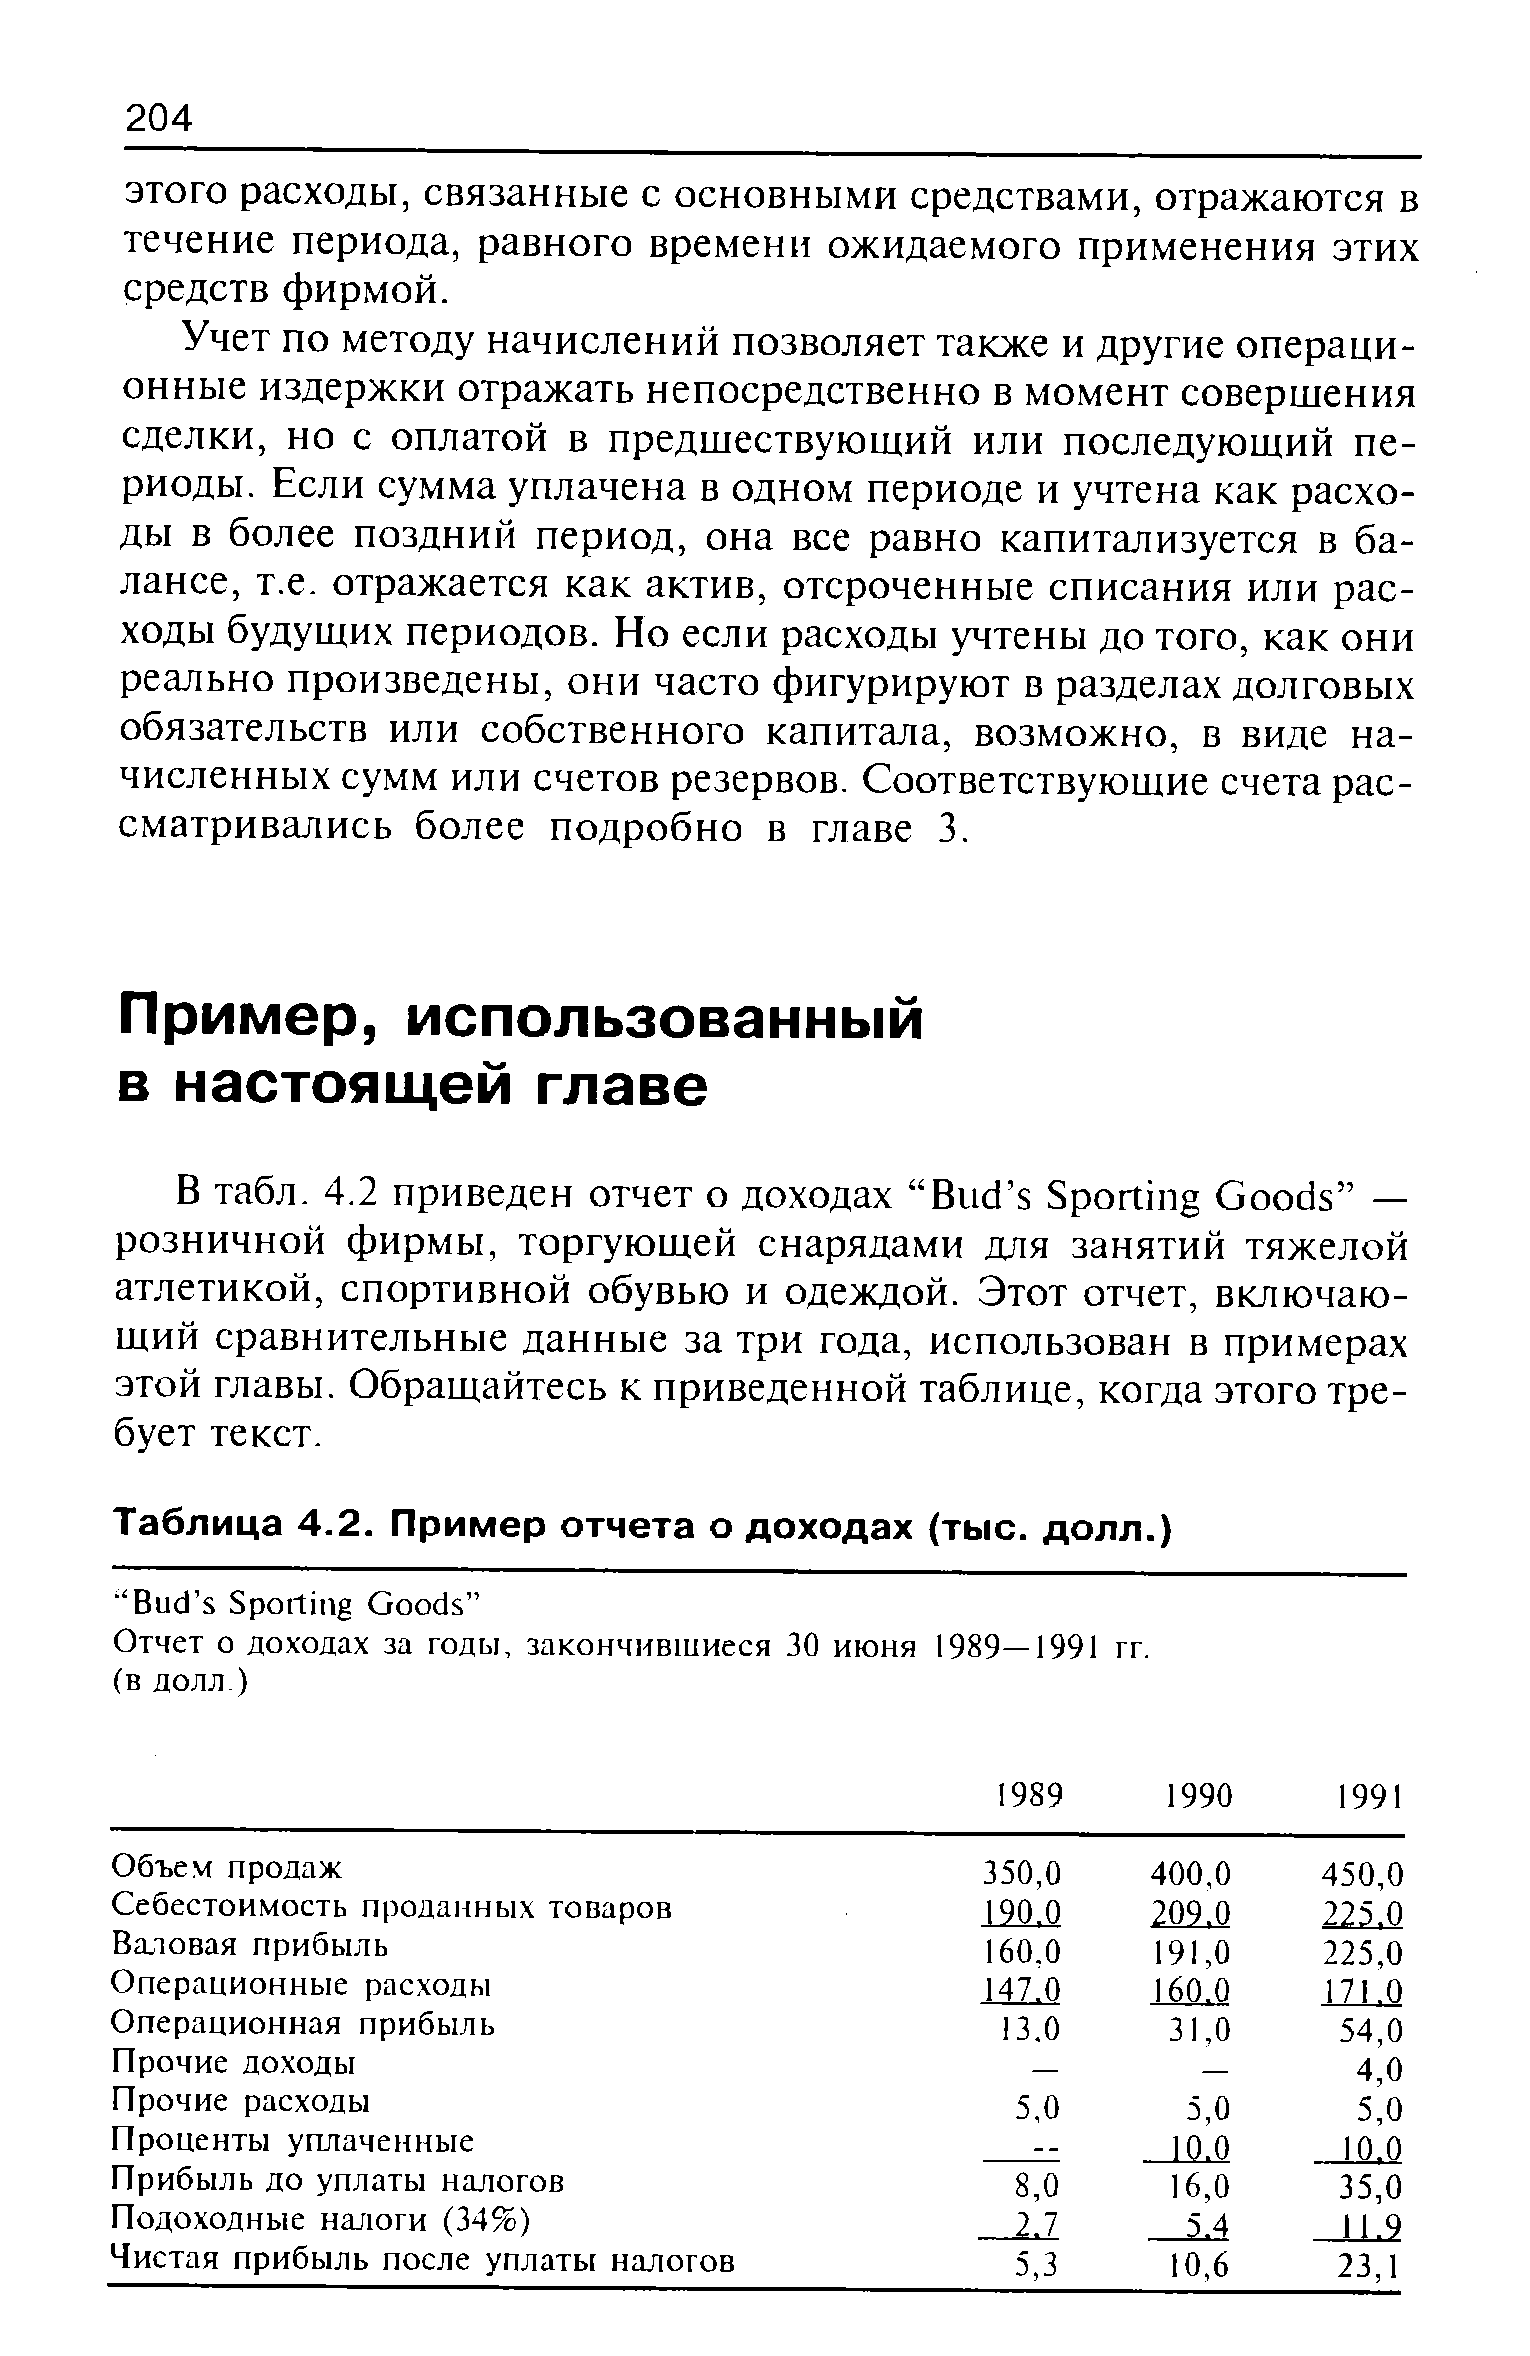 Отчет о доходах за годы, закончившиеся 30 июня 1989—1991 гг.
